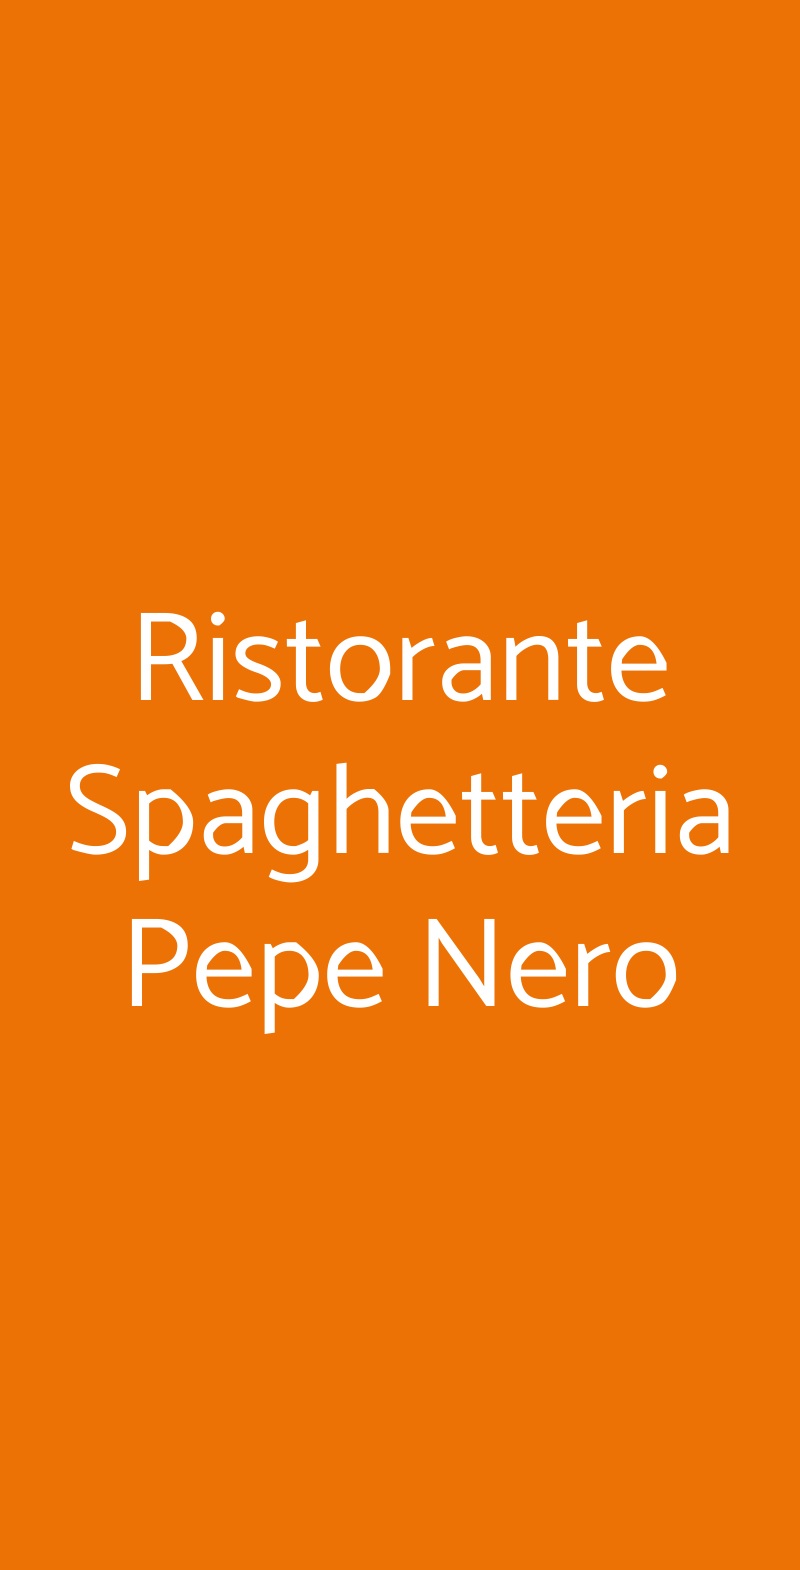 Ristorante Spaghetteria Pepe Nero Polignano a Mare menù 1 pagina